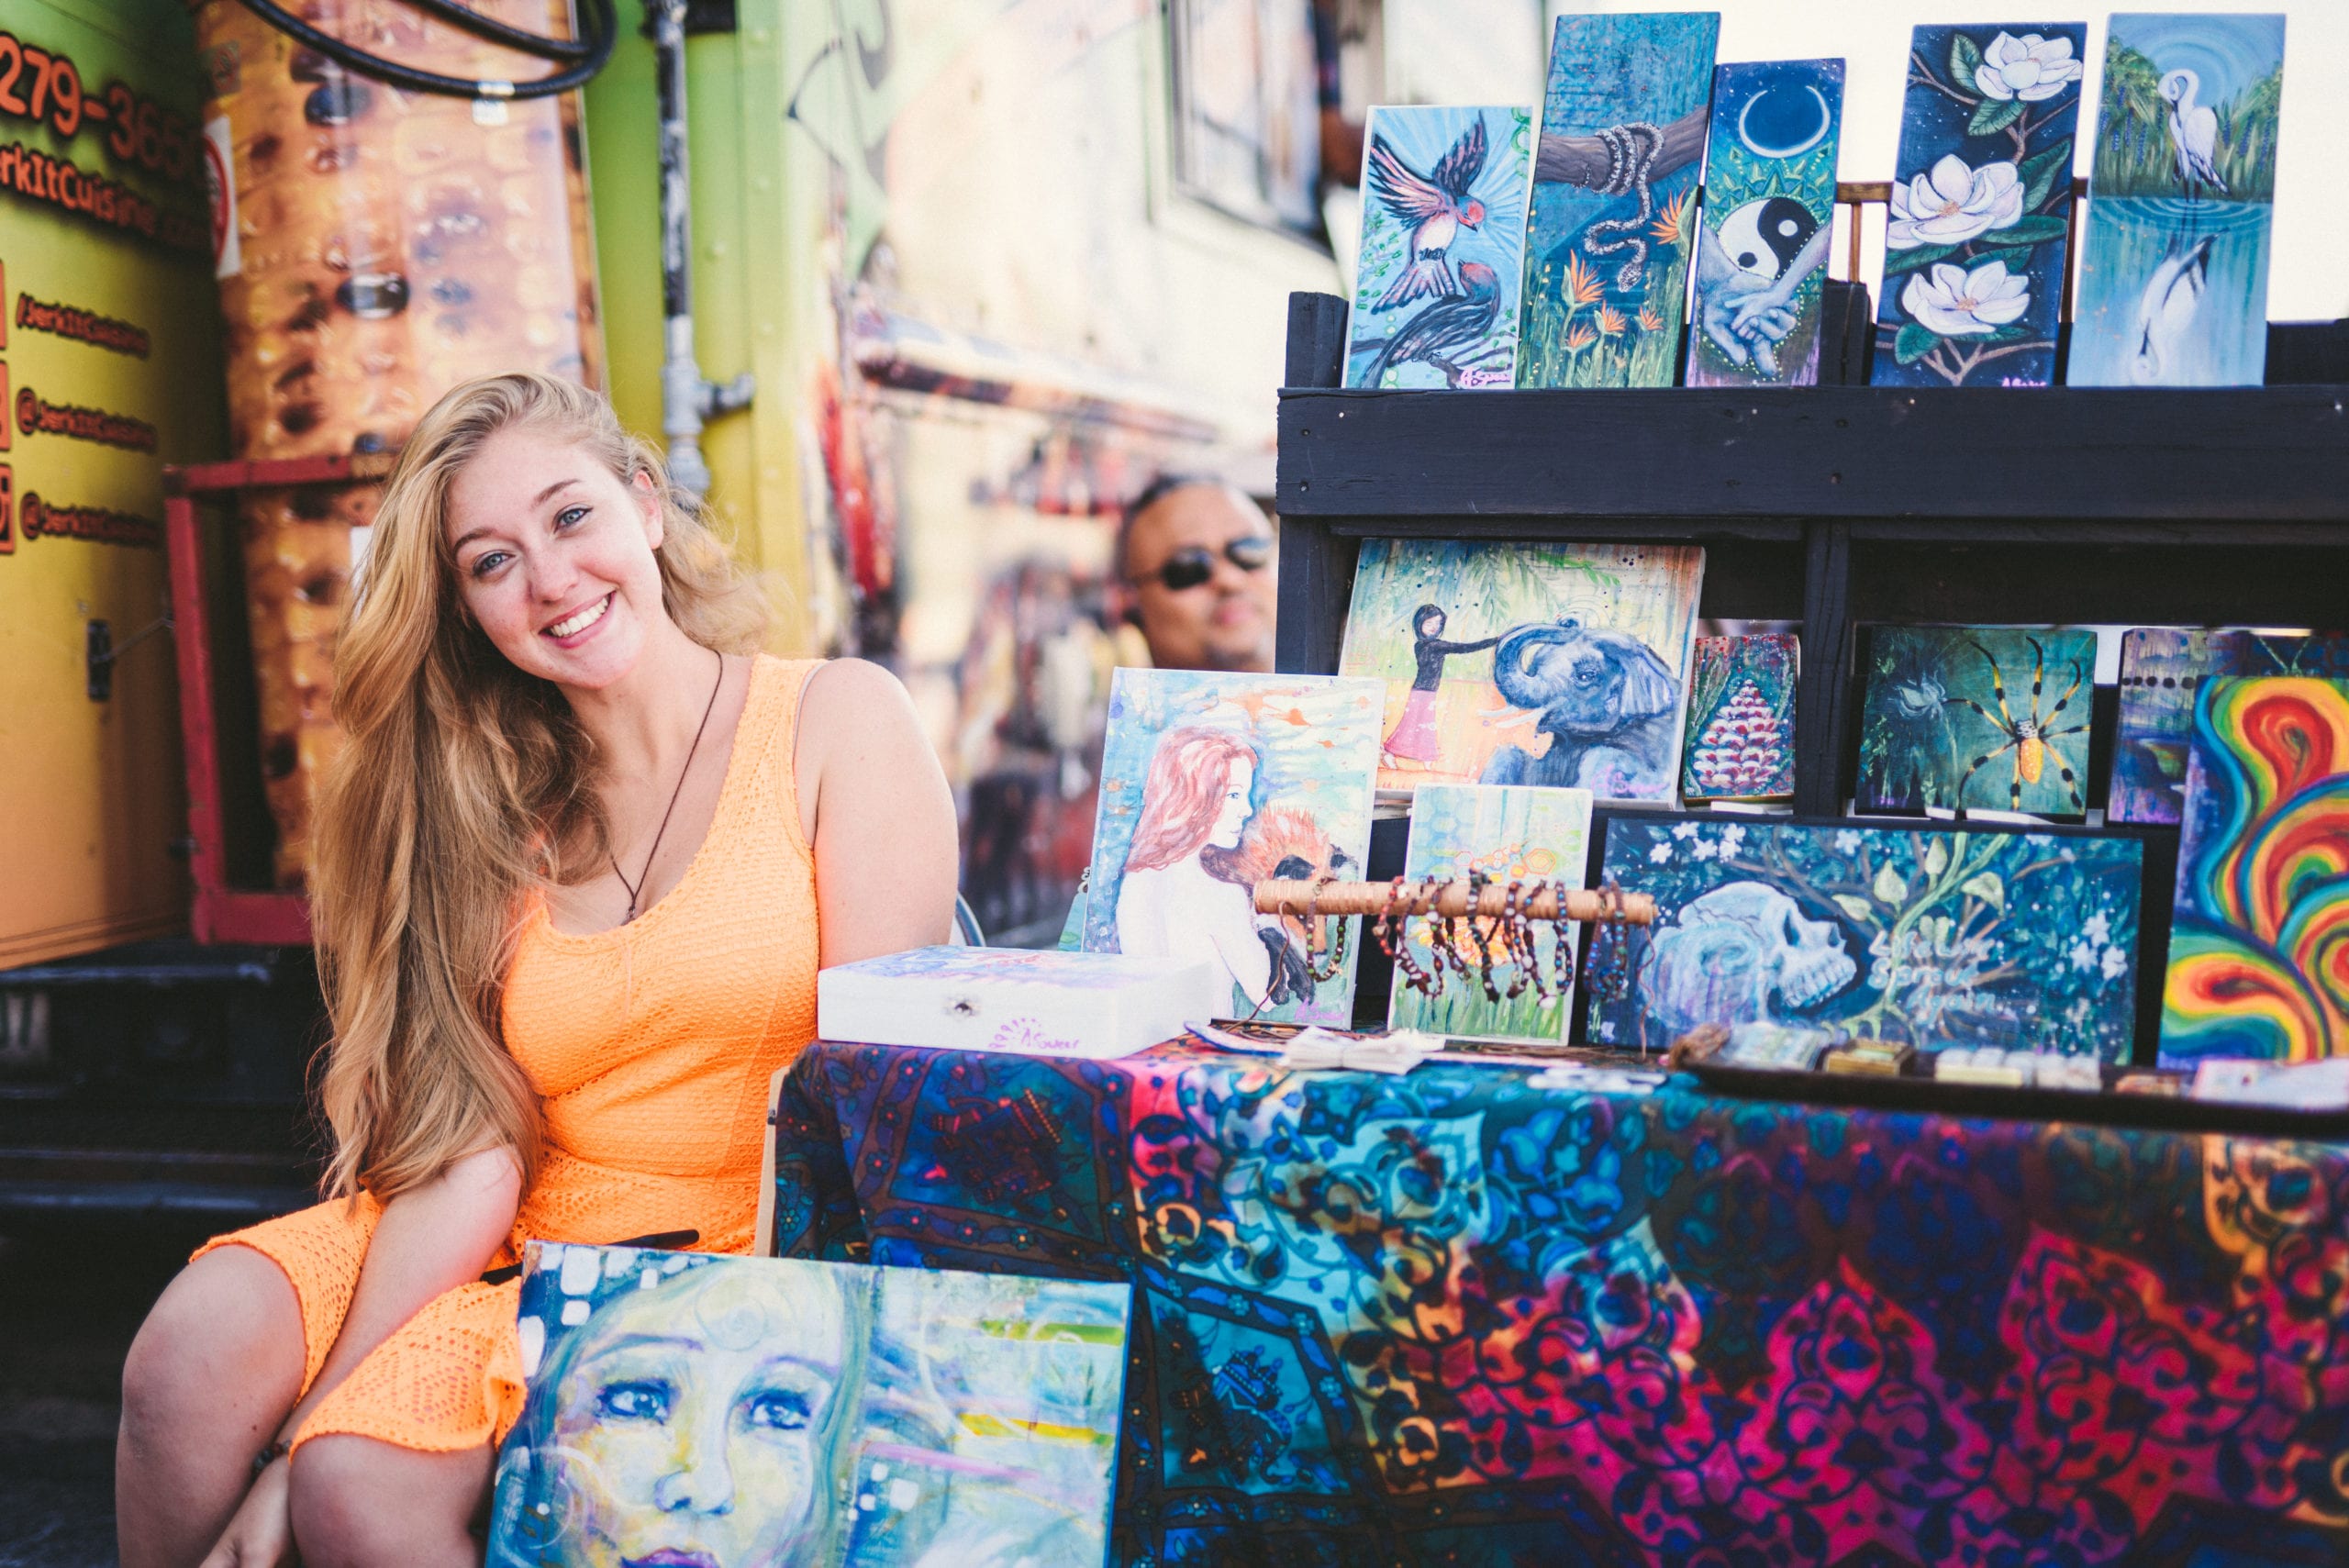 Woman with long blond hair wearing orange dress posing next to artwork